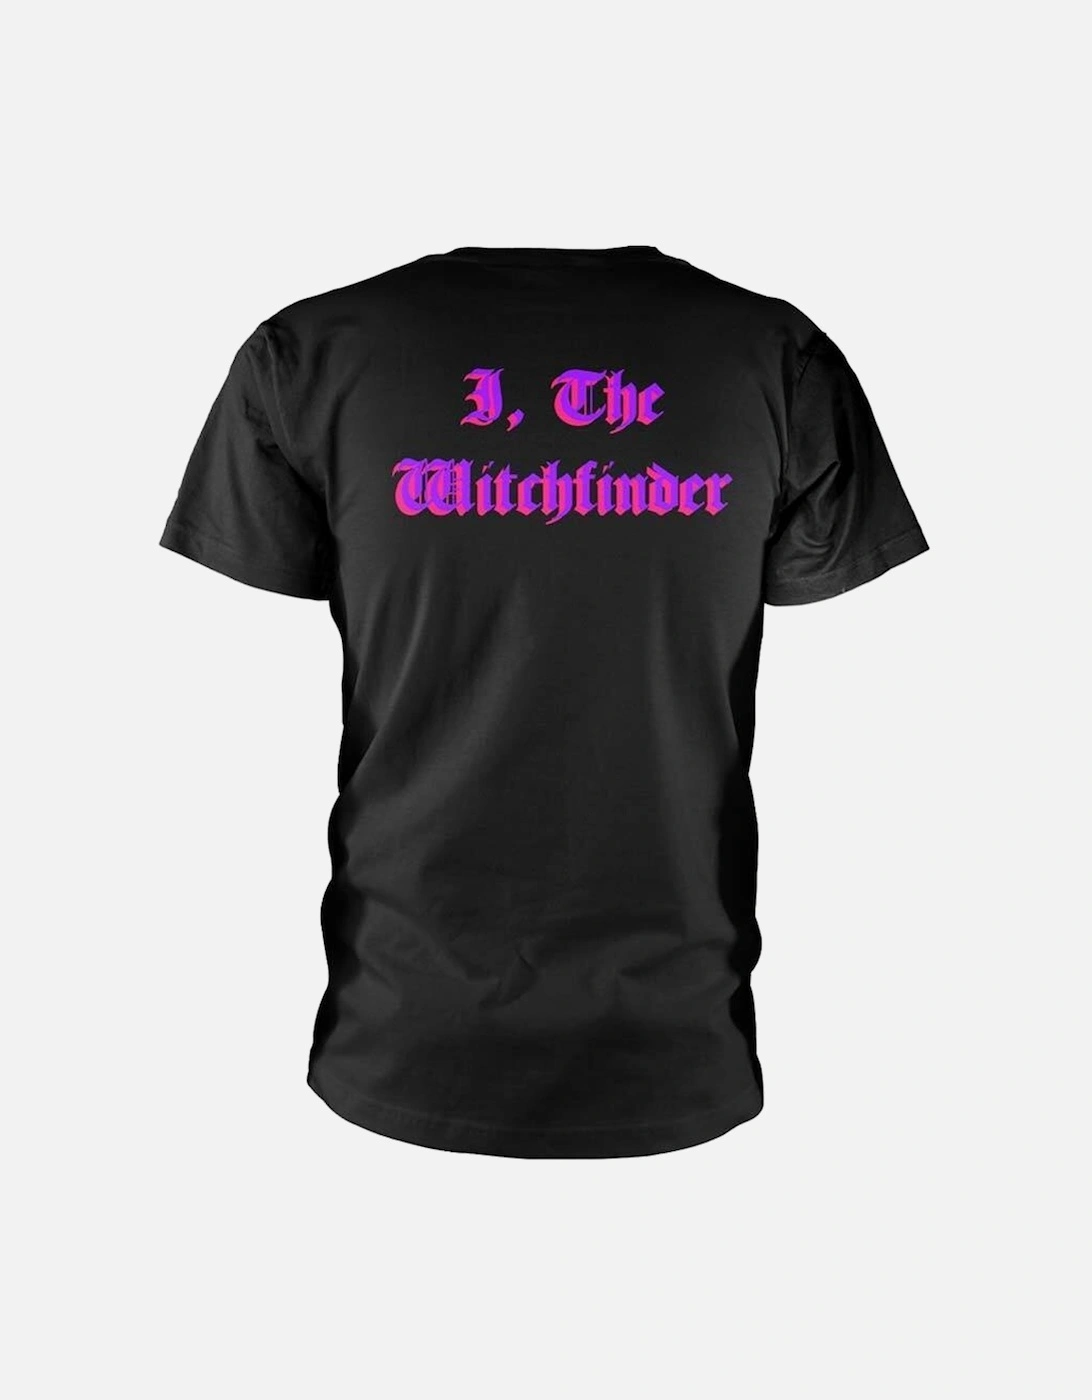 Unisex Adult Witchfinder Back Print T-Shirt